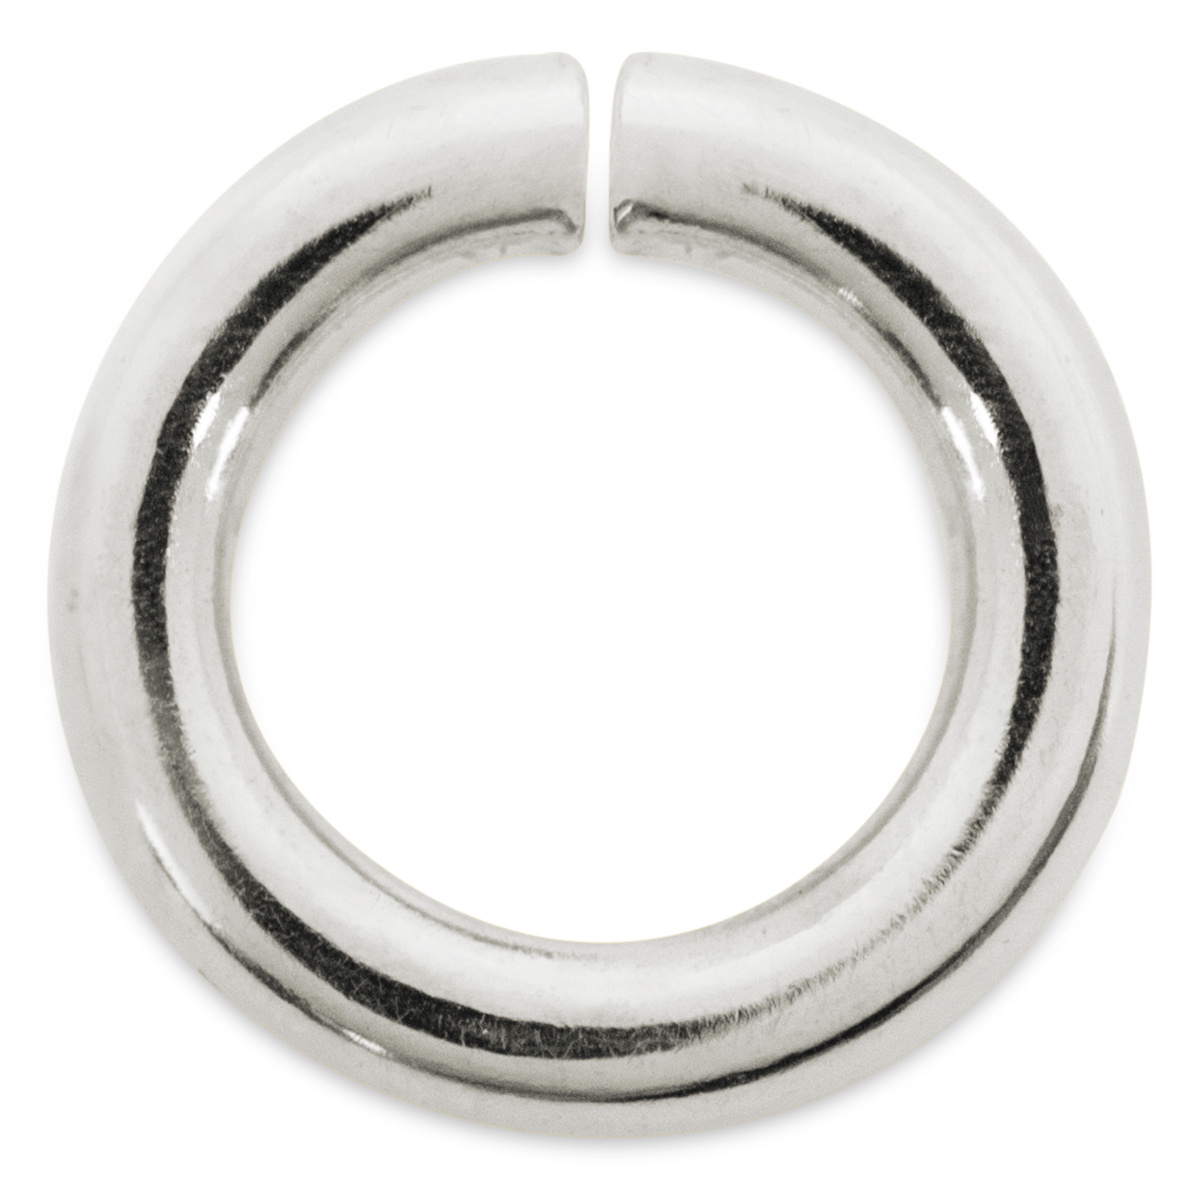 Binderinge, rund, 925/- Silber, Ø 4,5 mm, Stärke 0,8 mm